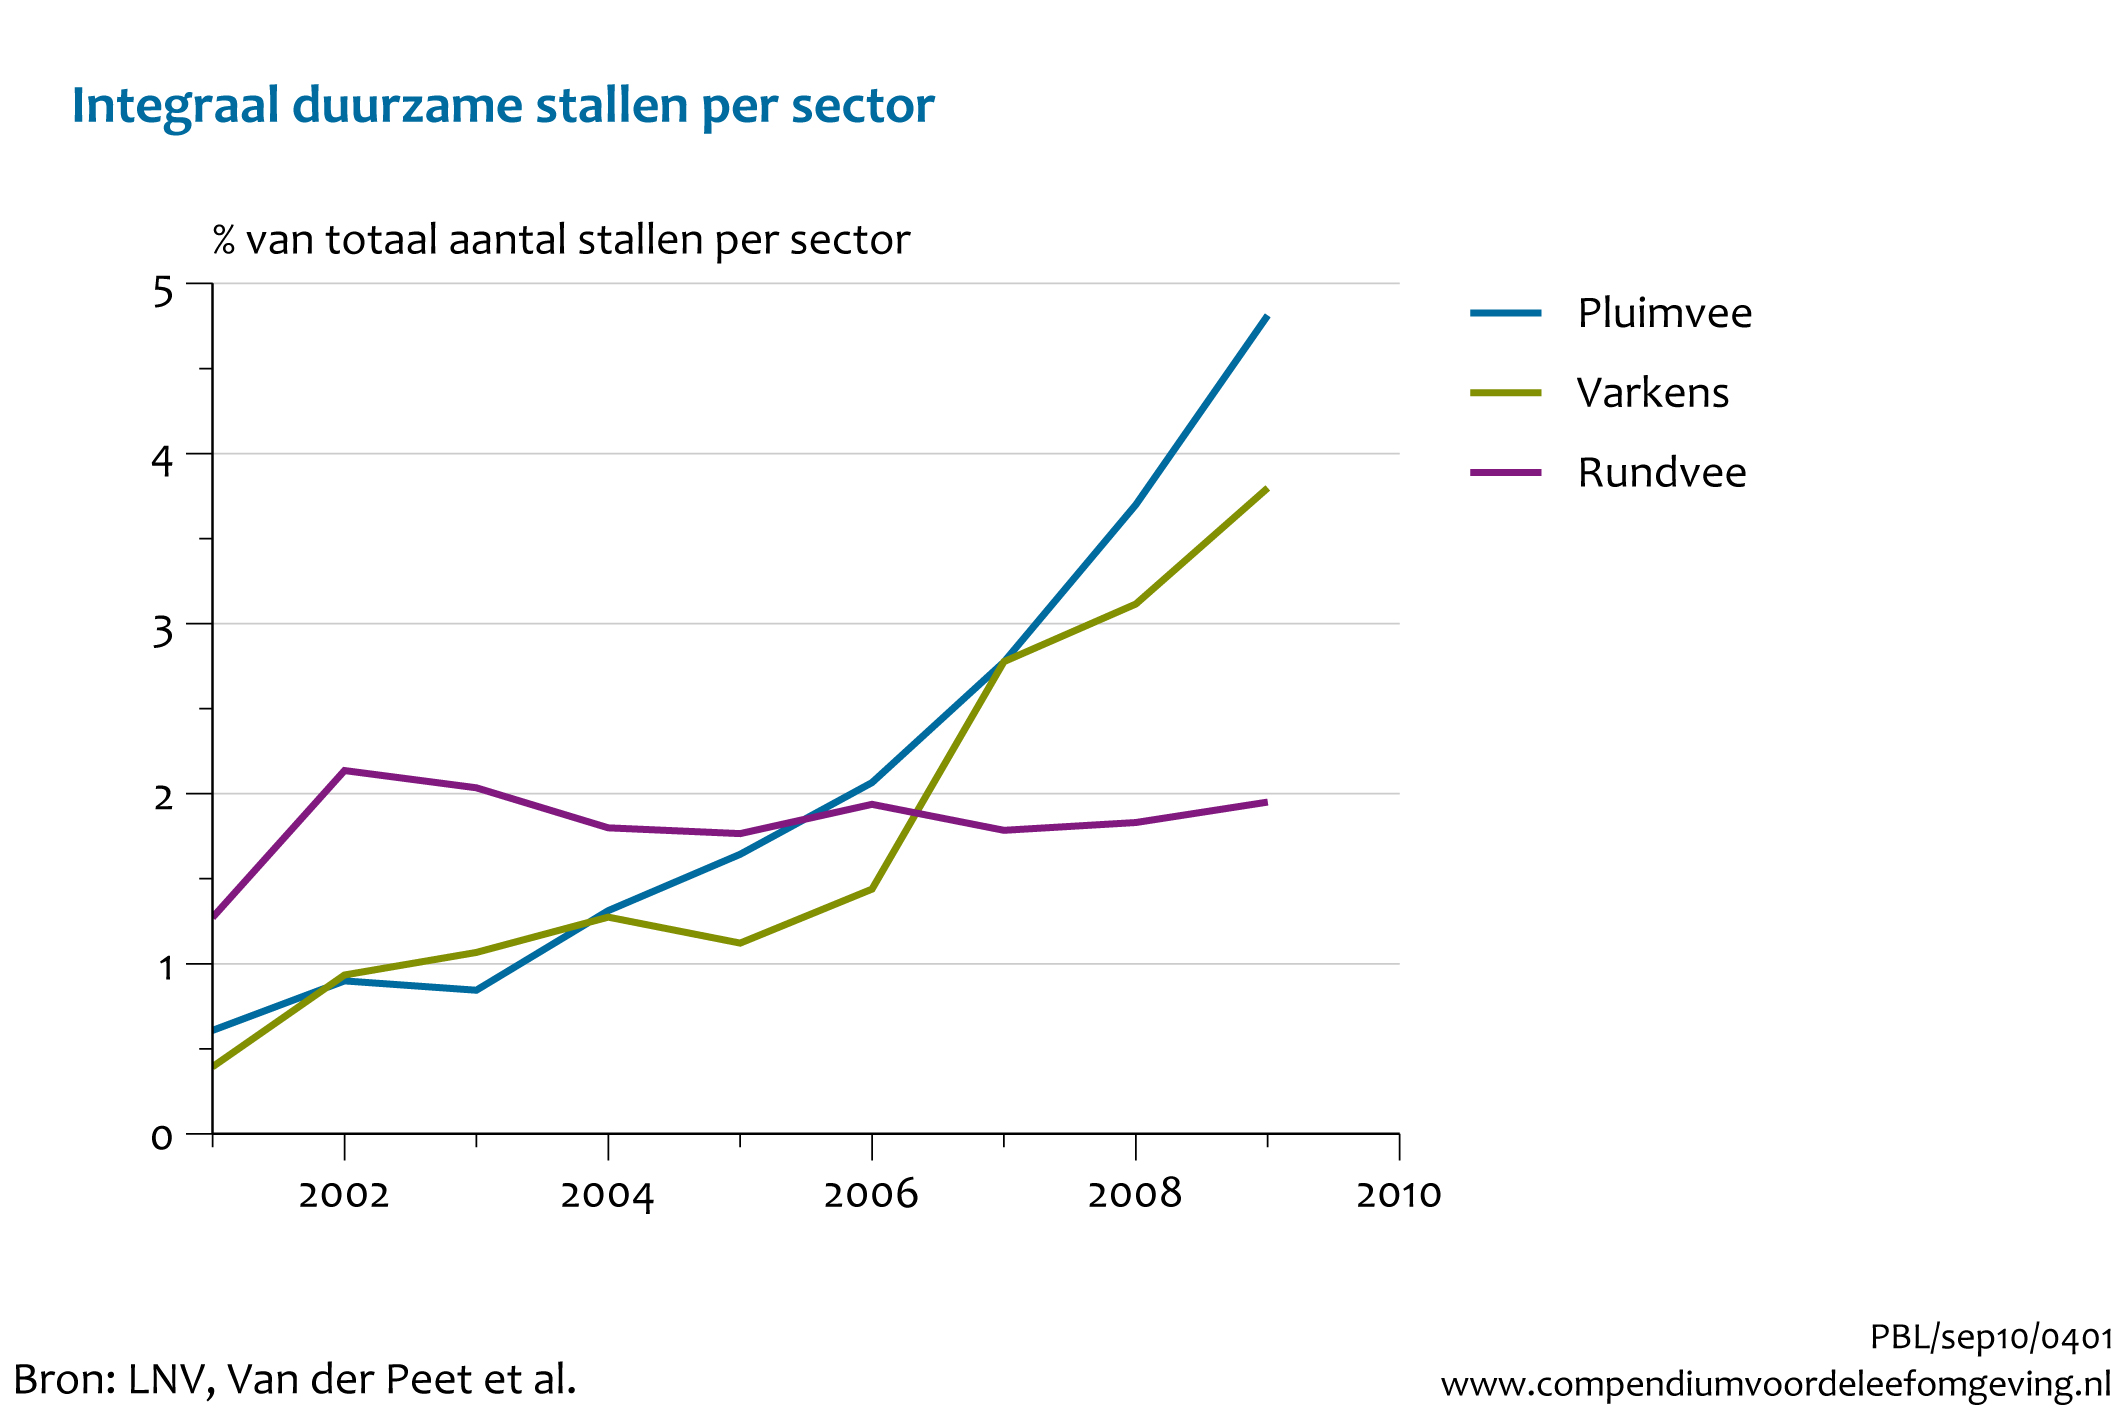 Figuur Percentage integraal duurzame stallen per sector. In de rest van de tekst wordt deze figuur uitgebreider uitgelegd.